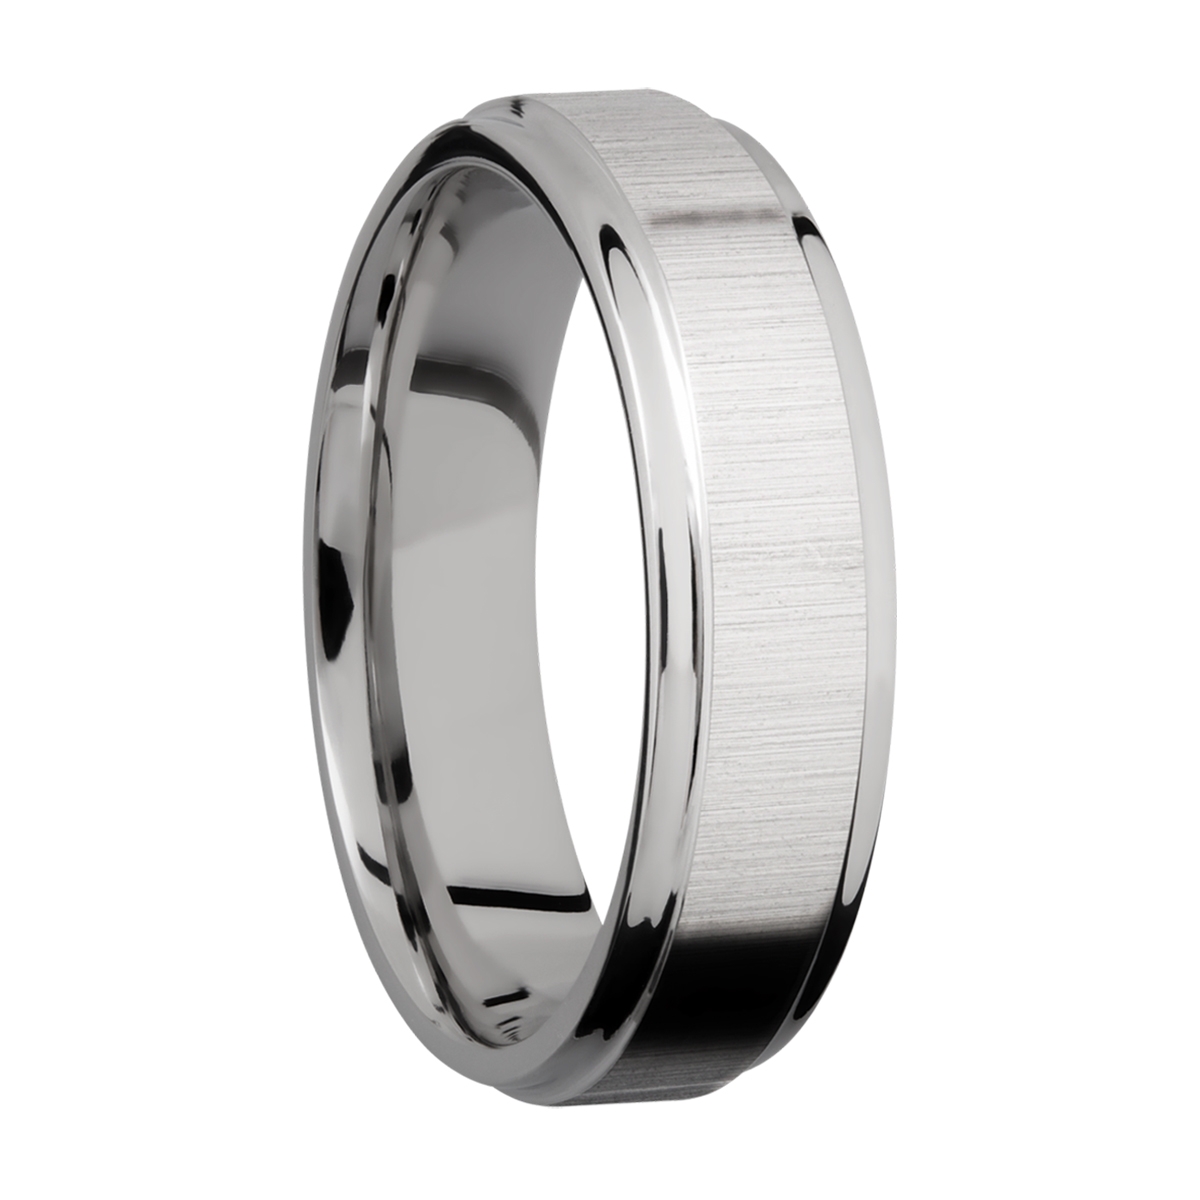 Lashbrook 6FGE Titanium Wedding Ring or Band